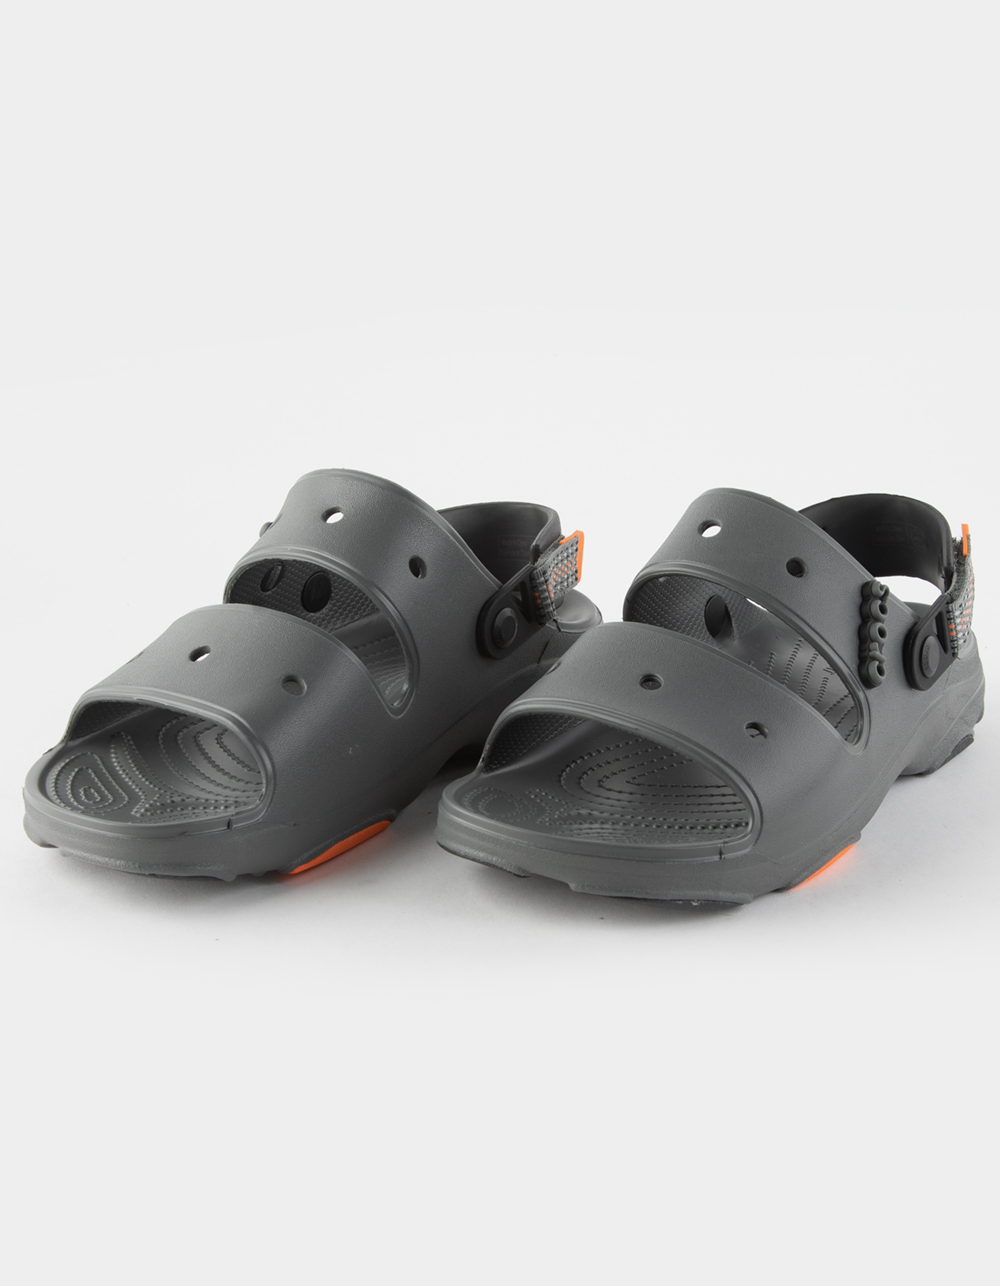 CROCS Classic All-Terrain Sandals